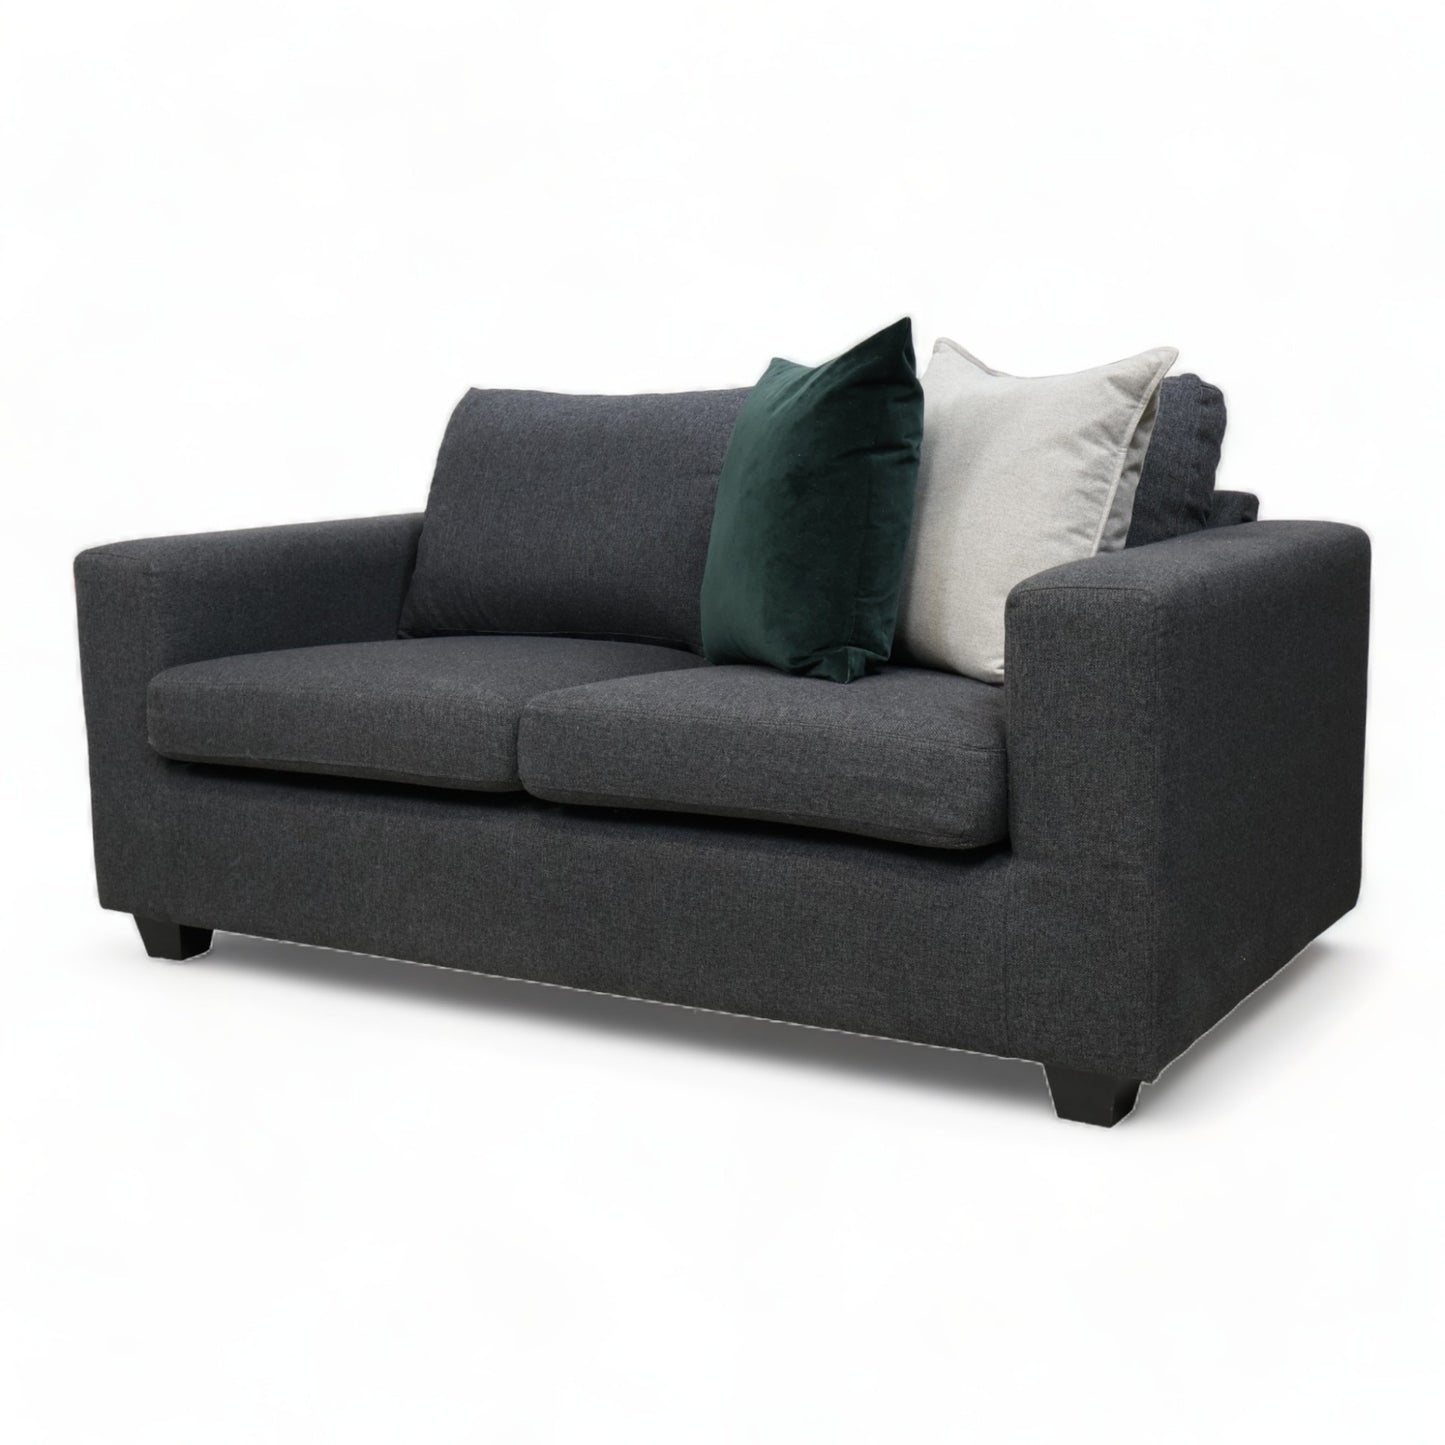 Nyrenset | Mørk grå Hjort Knudsen 2-seter sofa